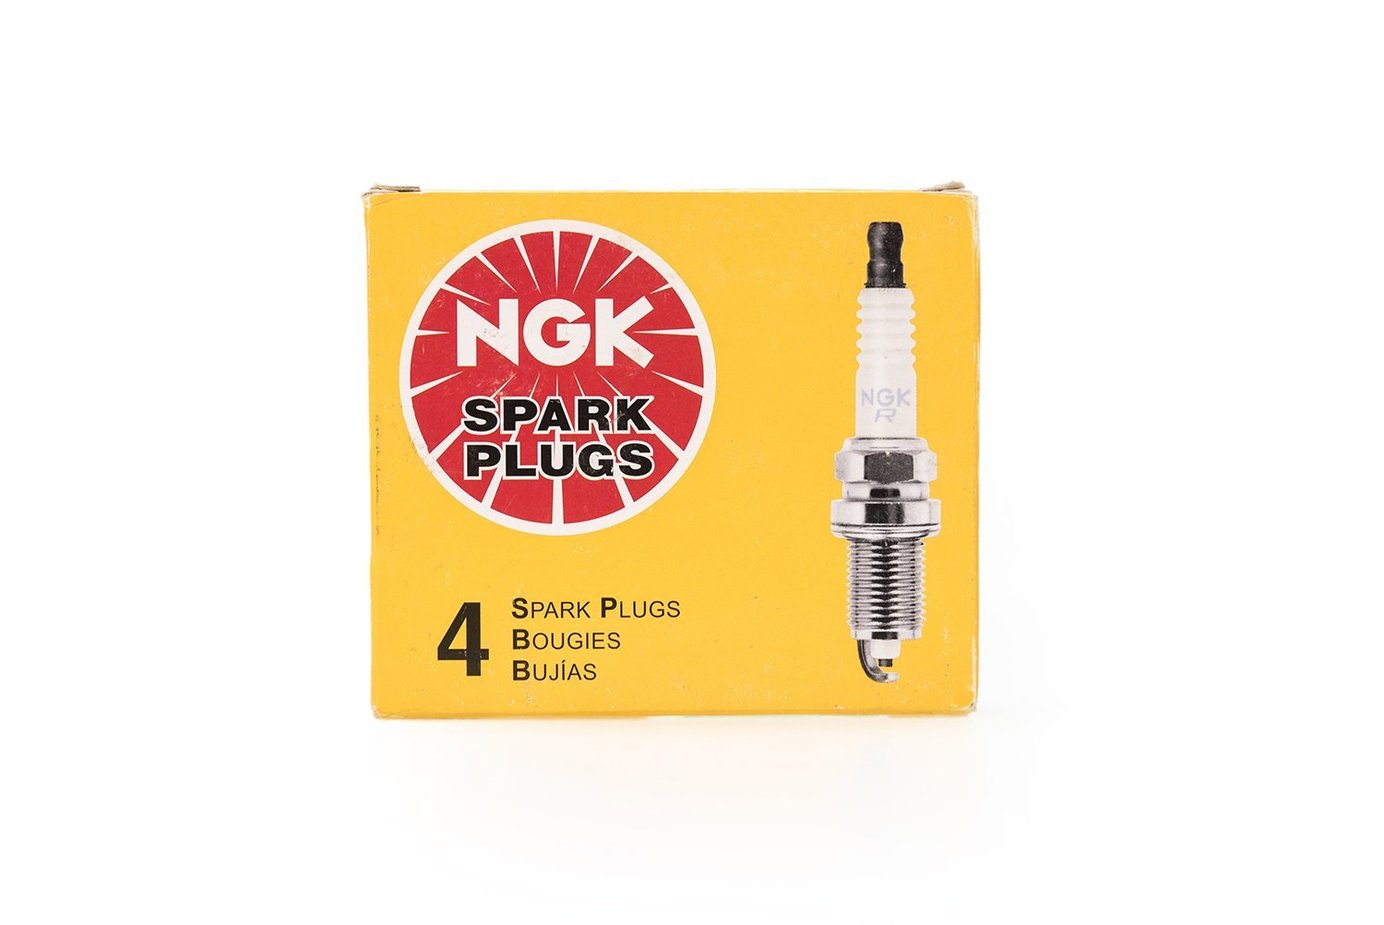 NGK Copper Nickel Alloy 1-Step Colder Spark Plugs (BPR8ES) (Evo 8)